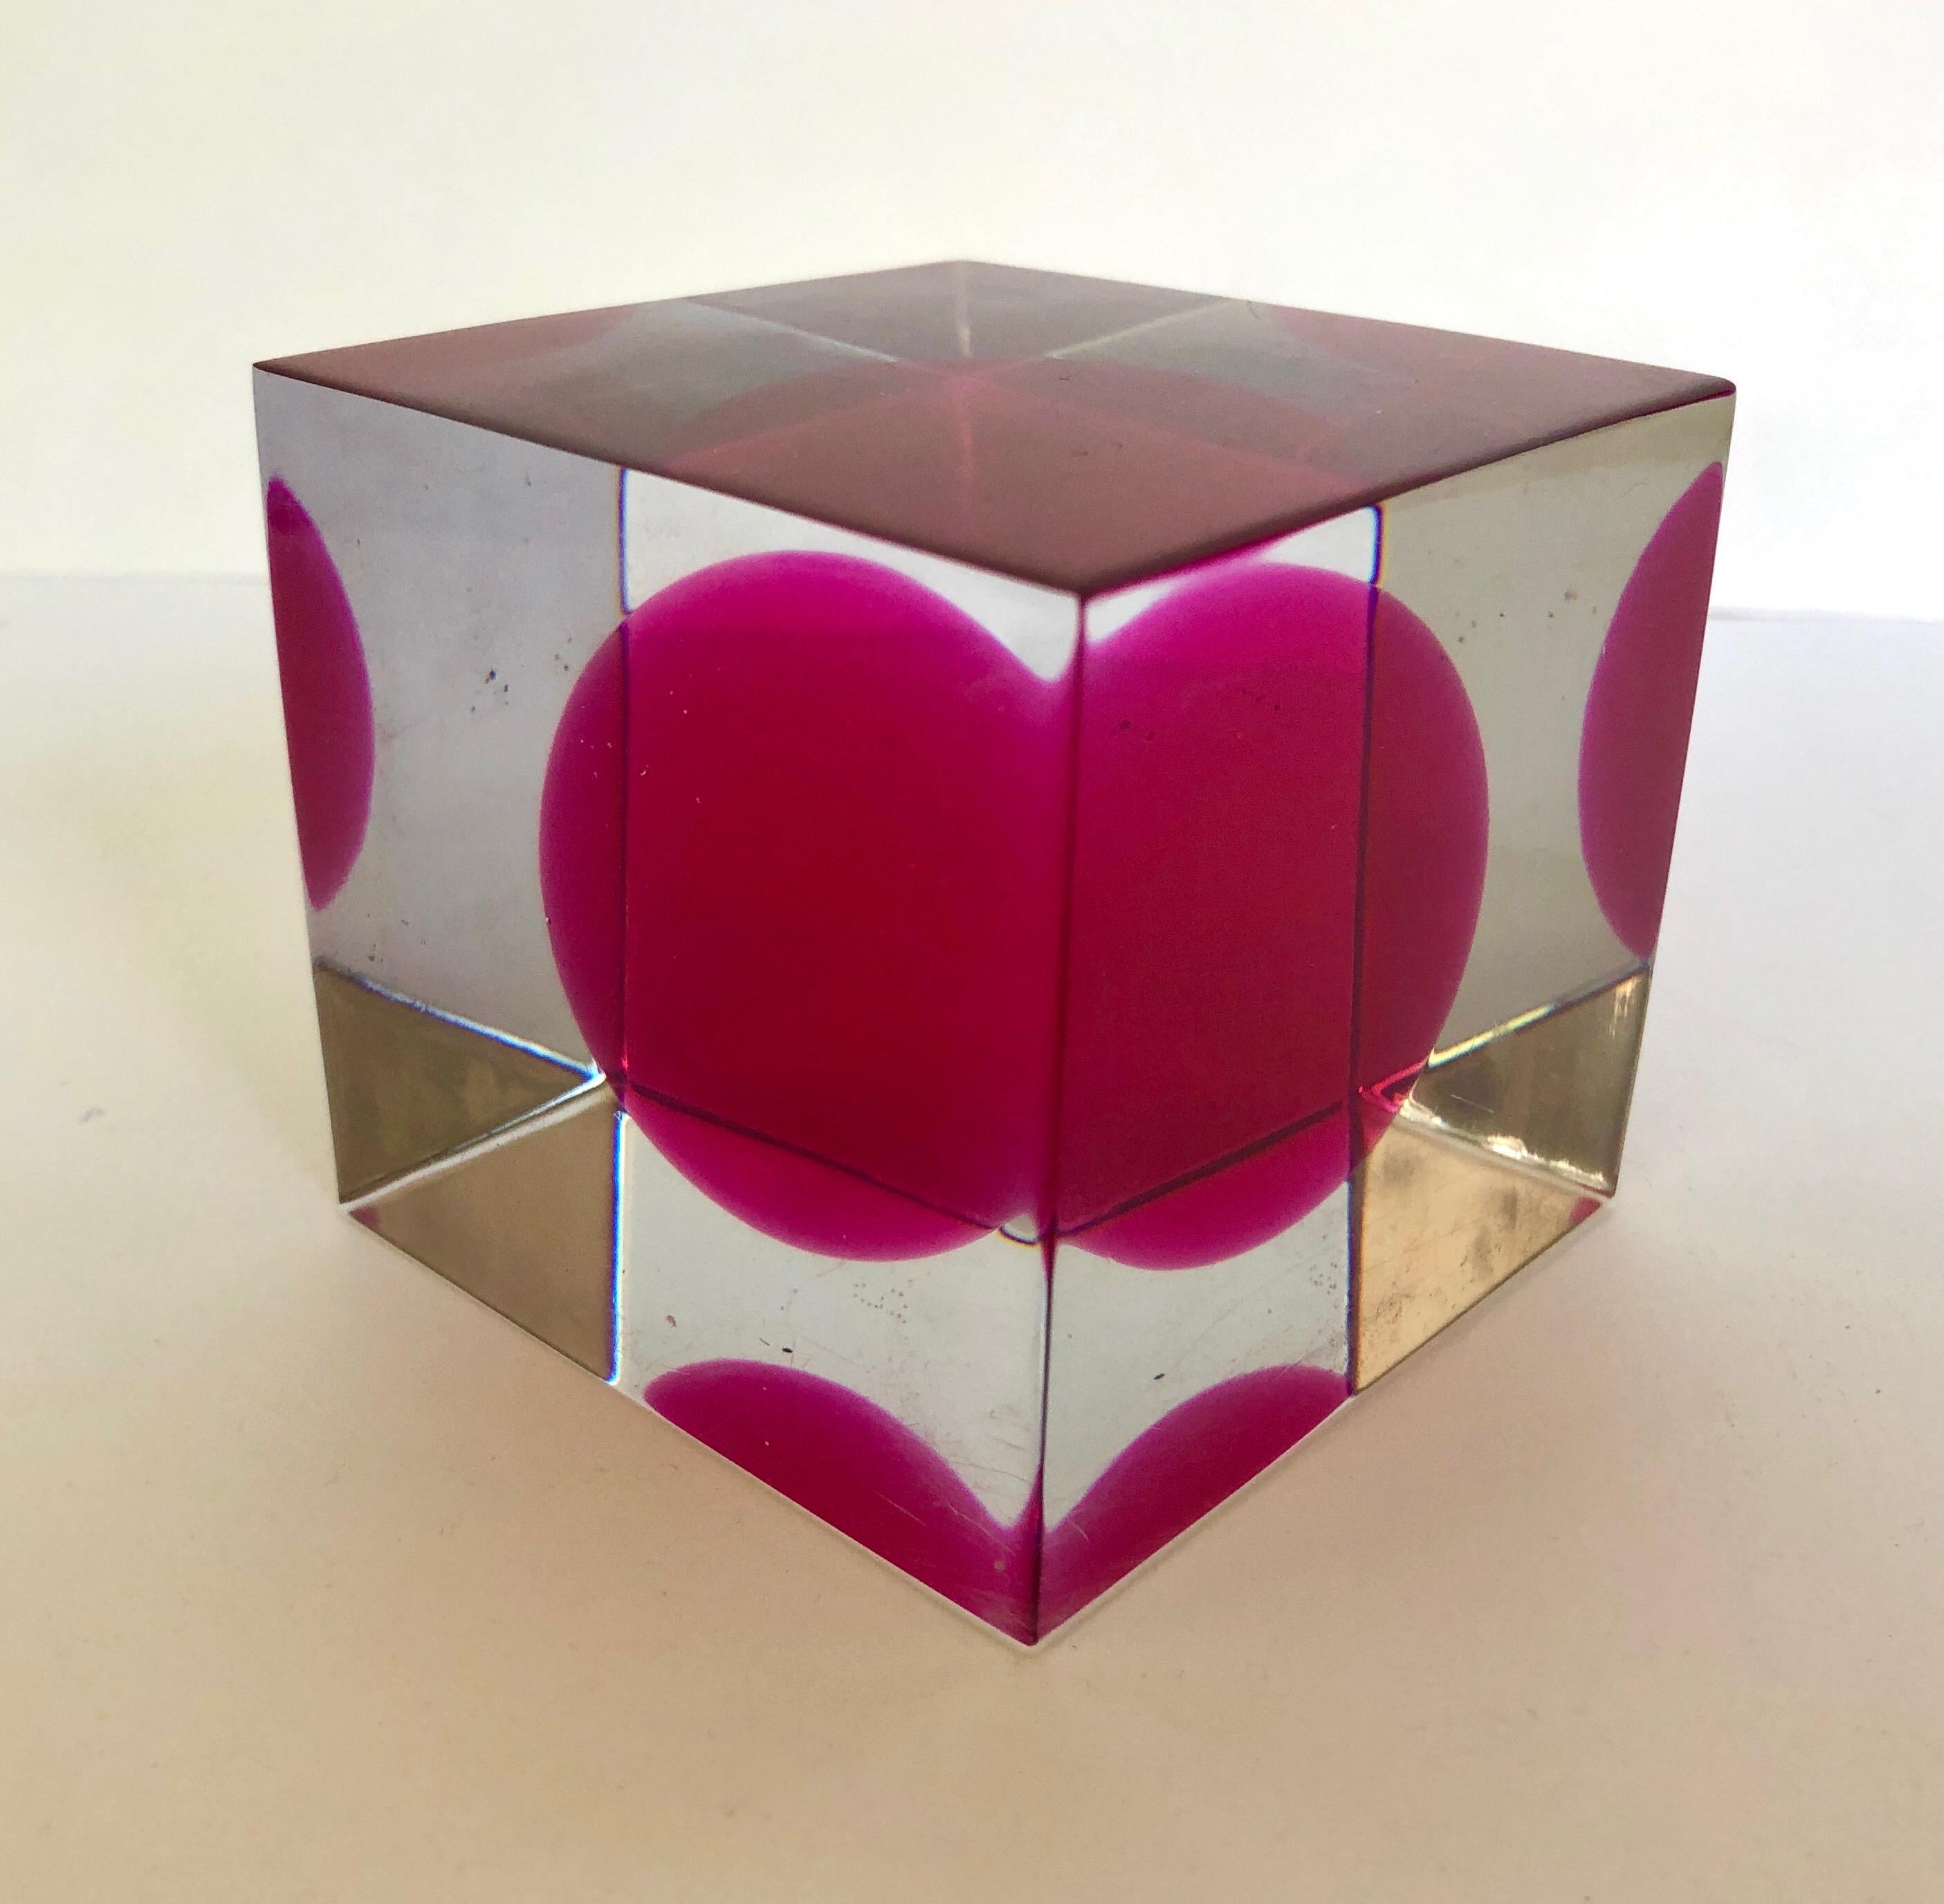 Cube en lucite avec sphère rouge interne.